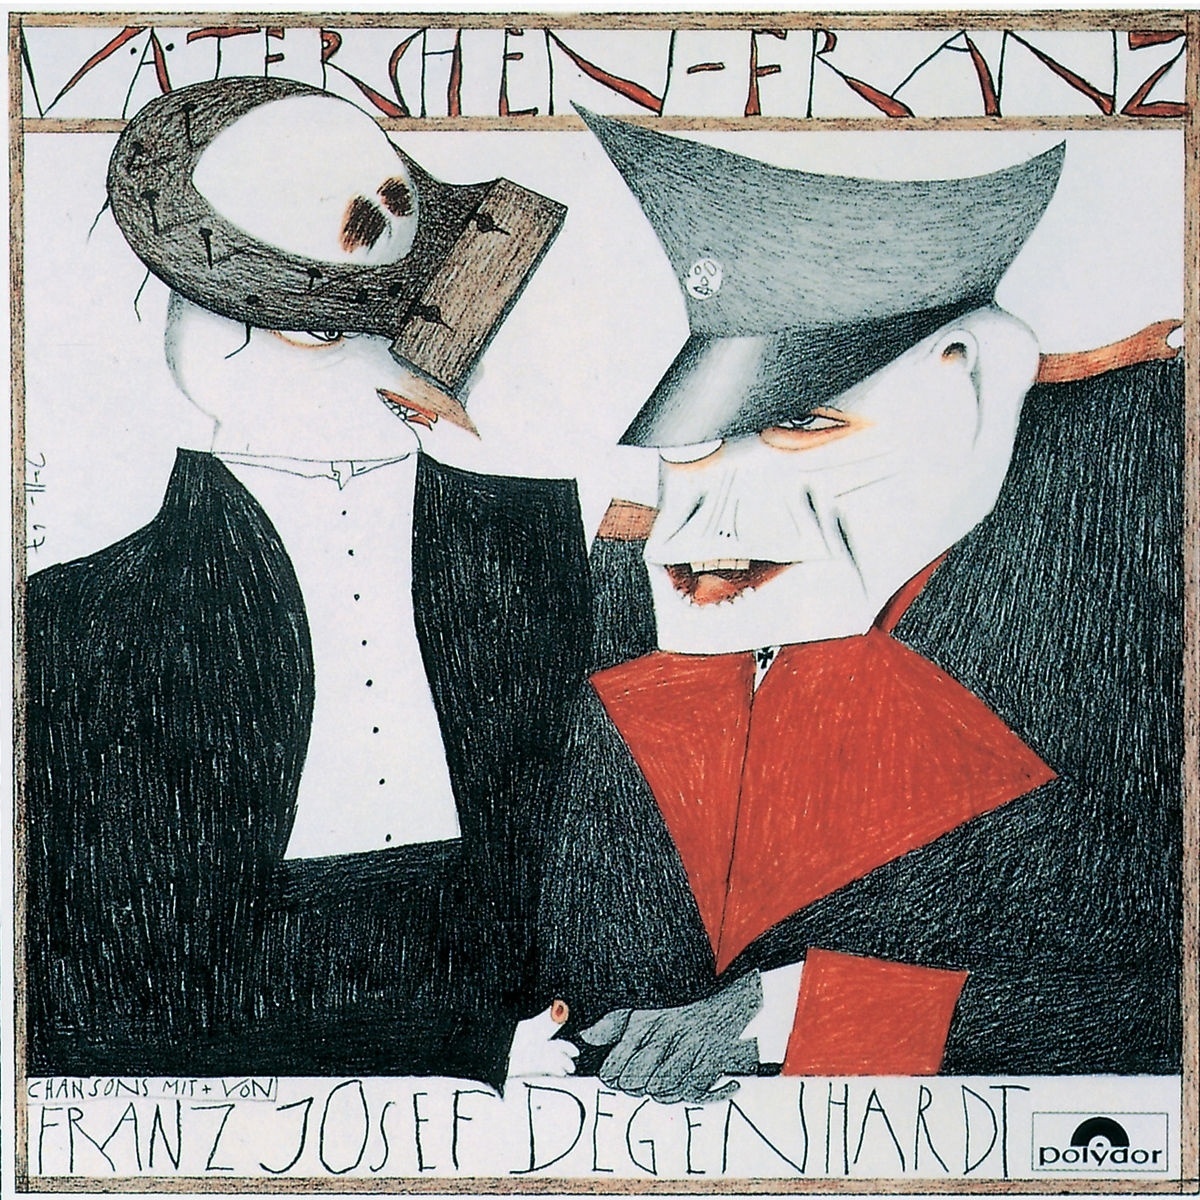 Väterchen Franz - Franz Josef Degenhardt. (CD)